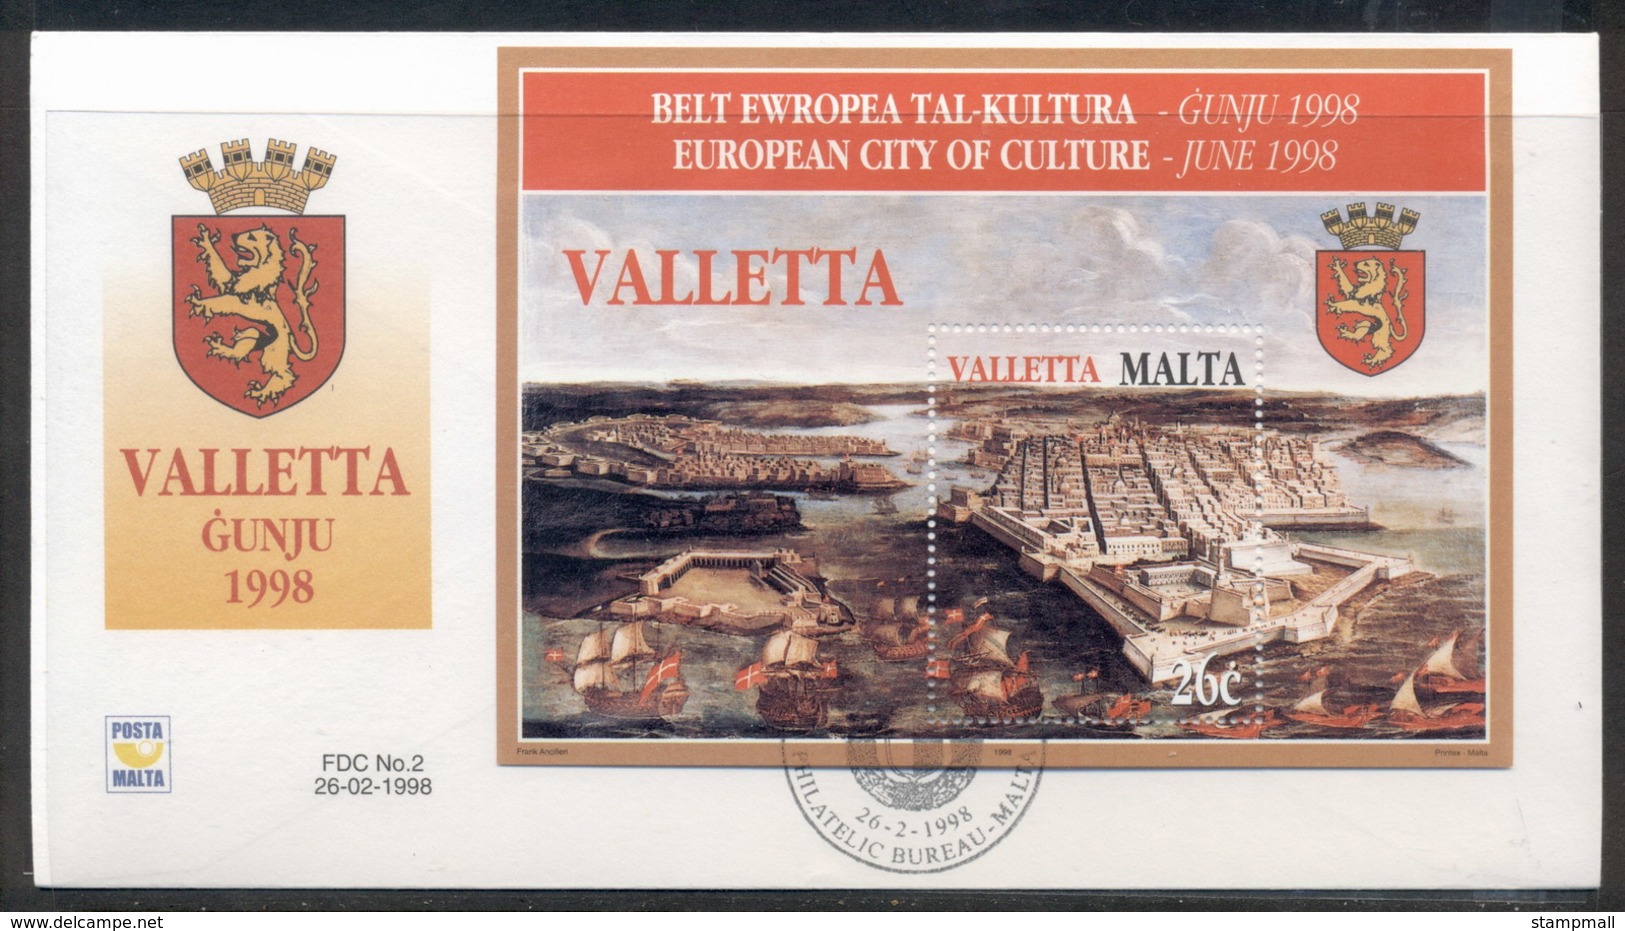 Malta 1998 Valetta City Of Culture MS FDC - Malta